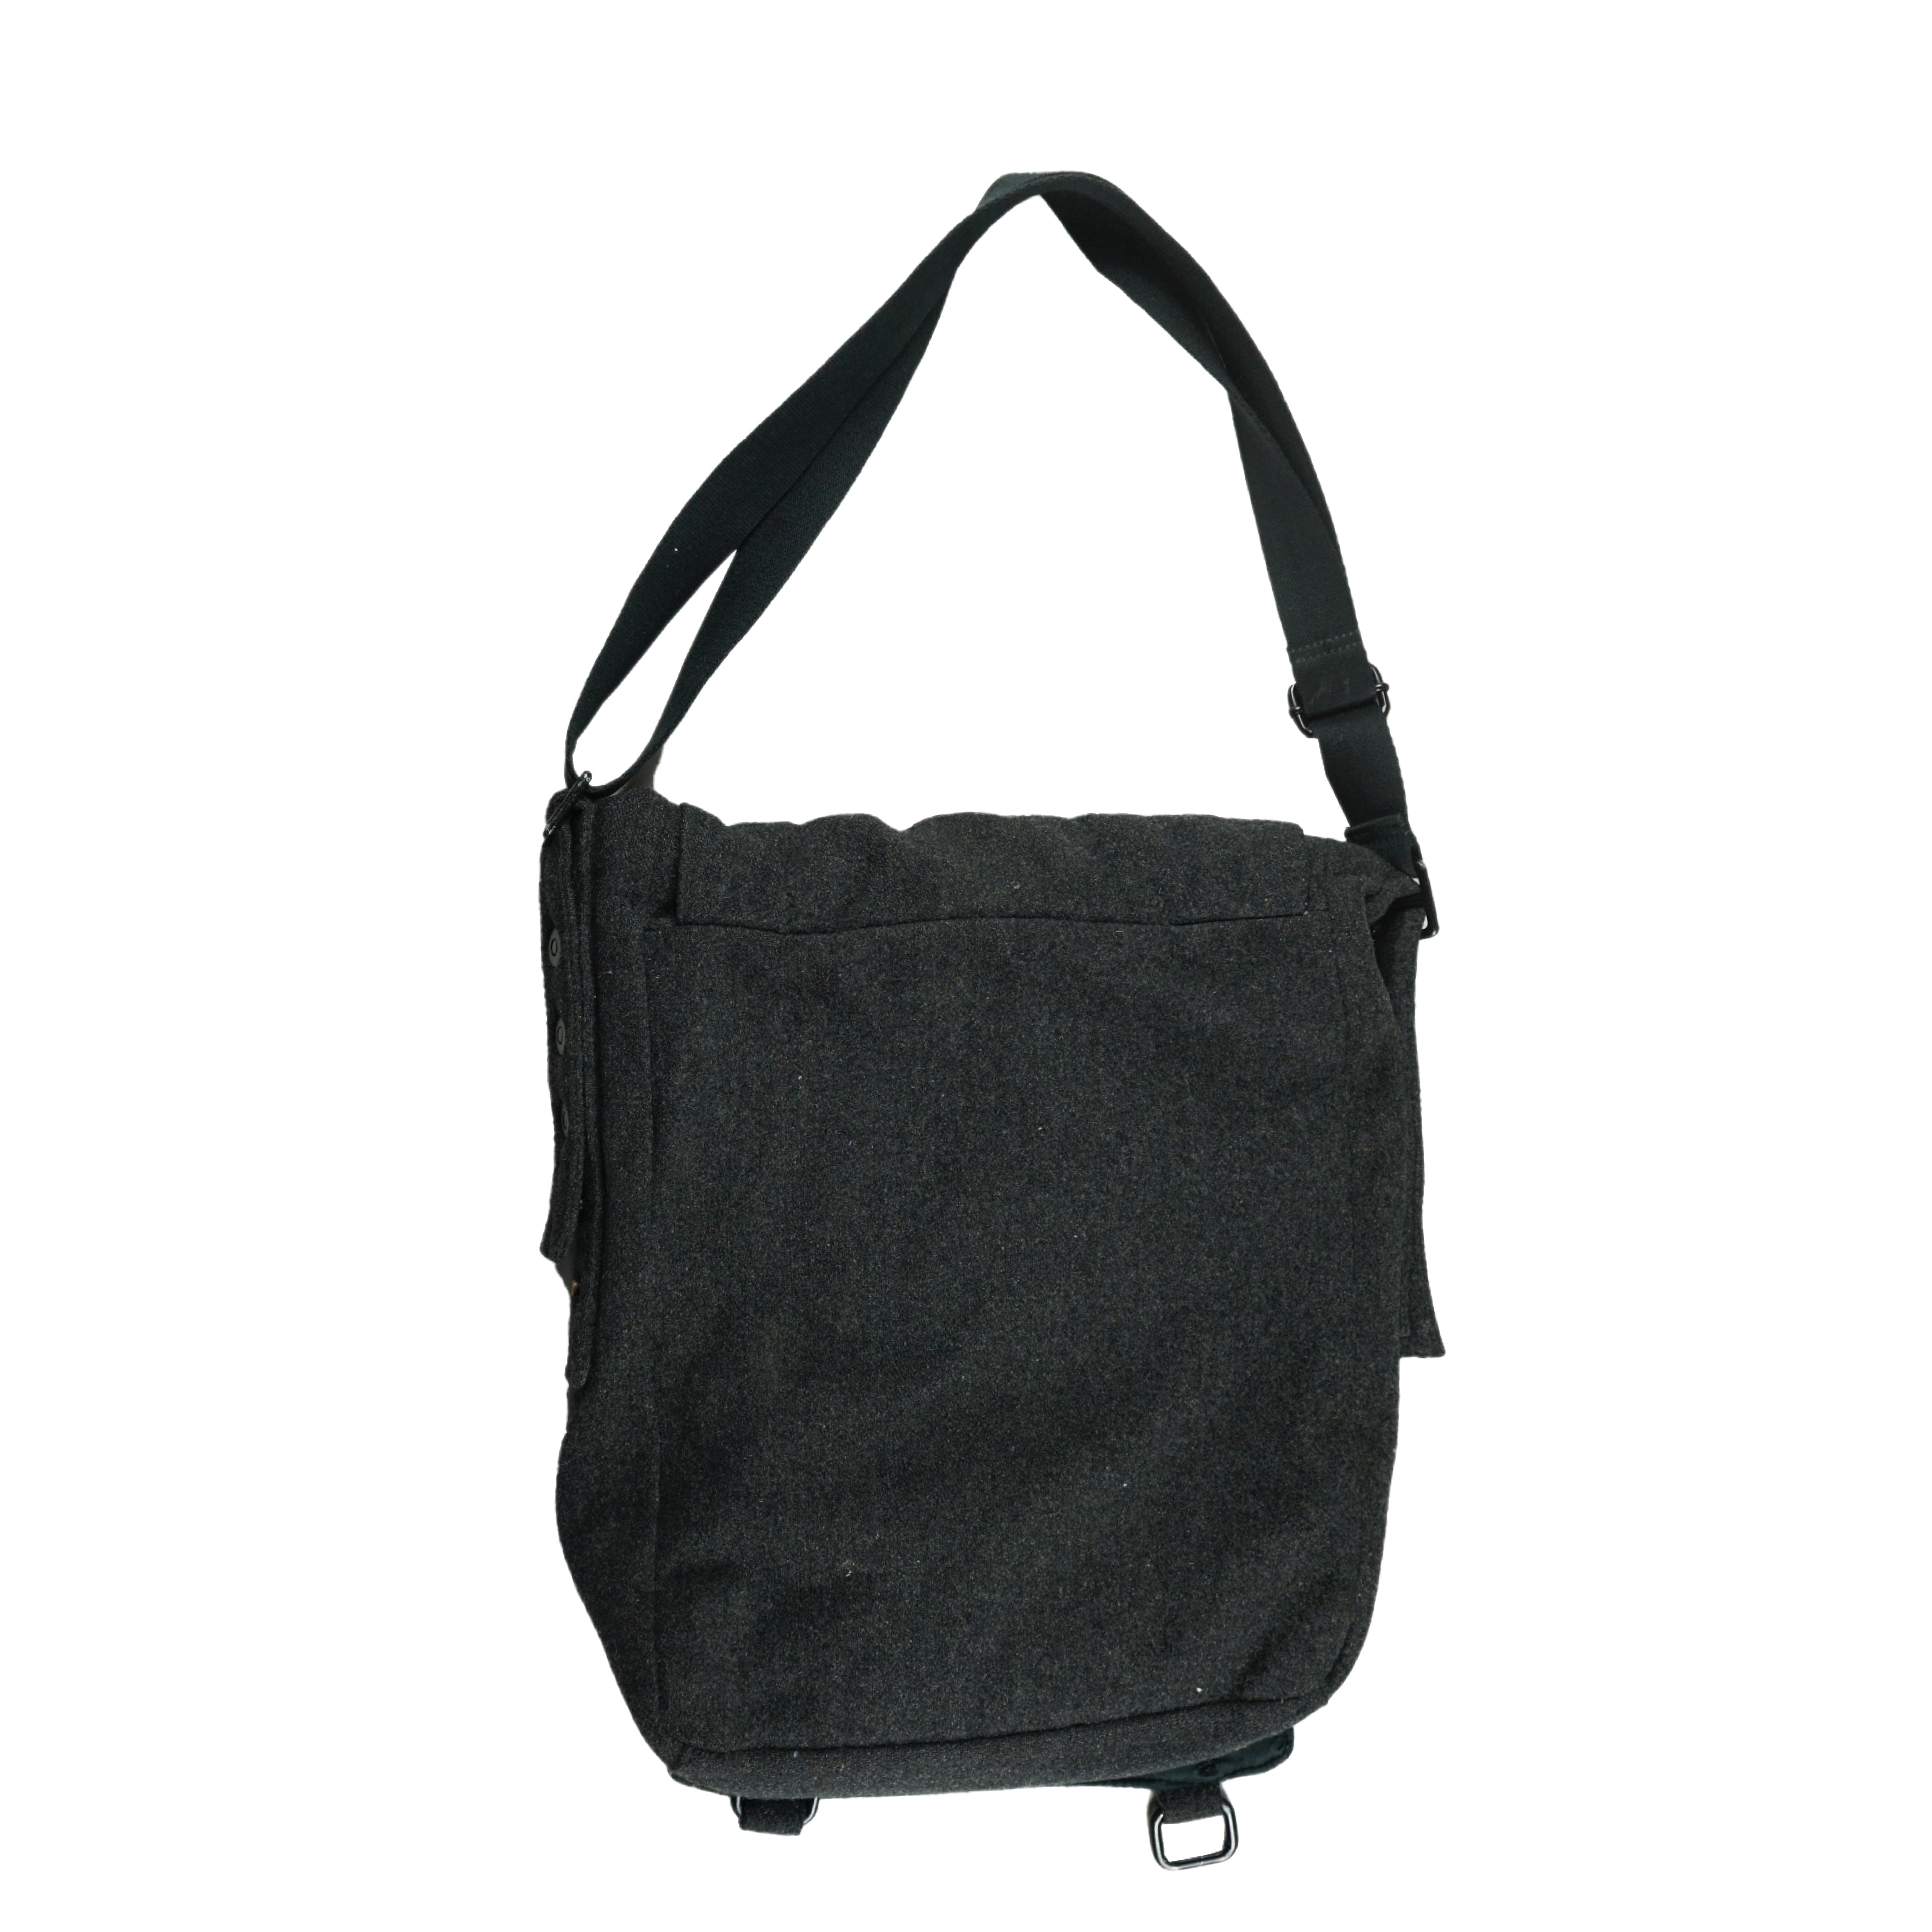 Rental ONLY: Raf Simons x Eastpak Wool Shoulder Bag